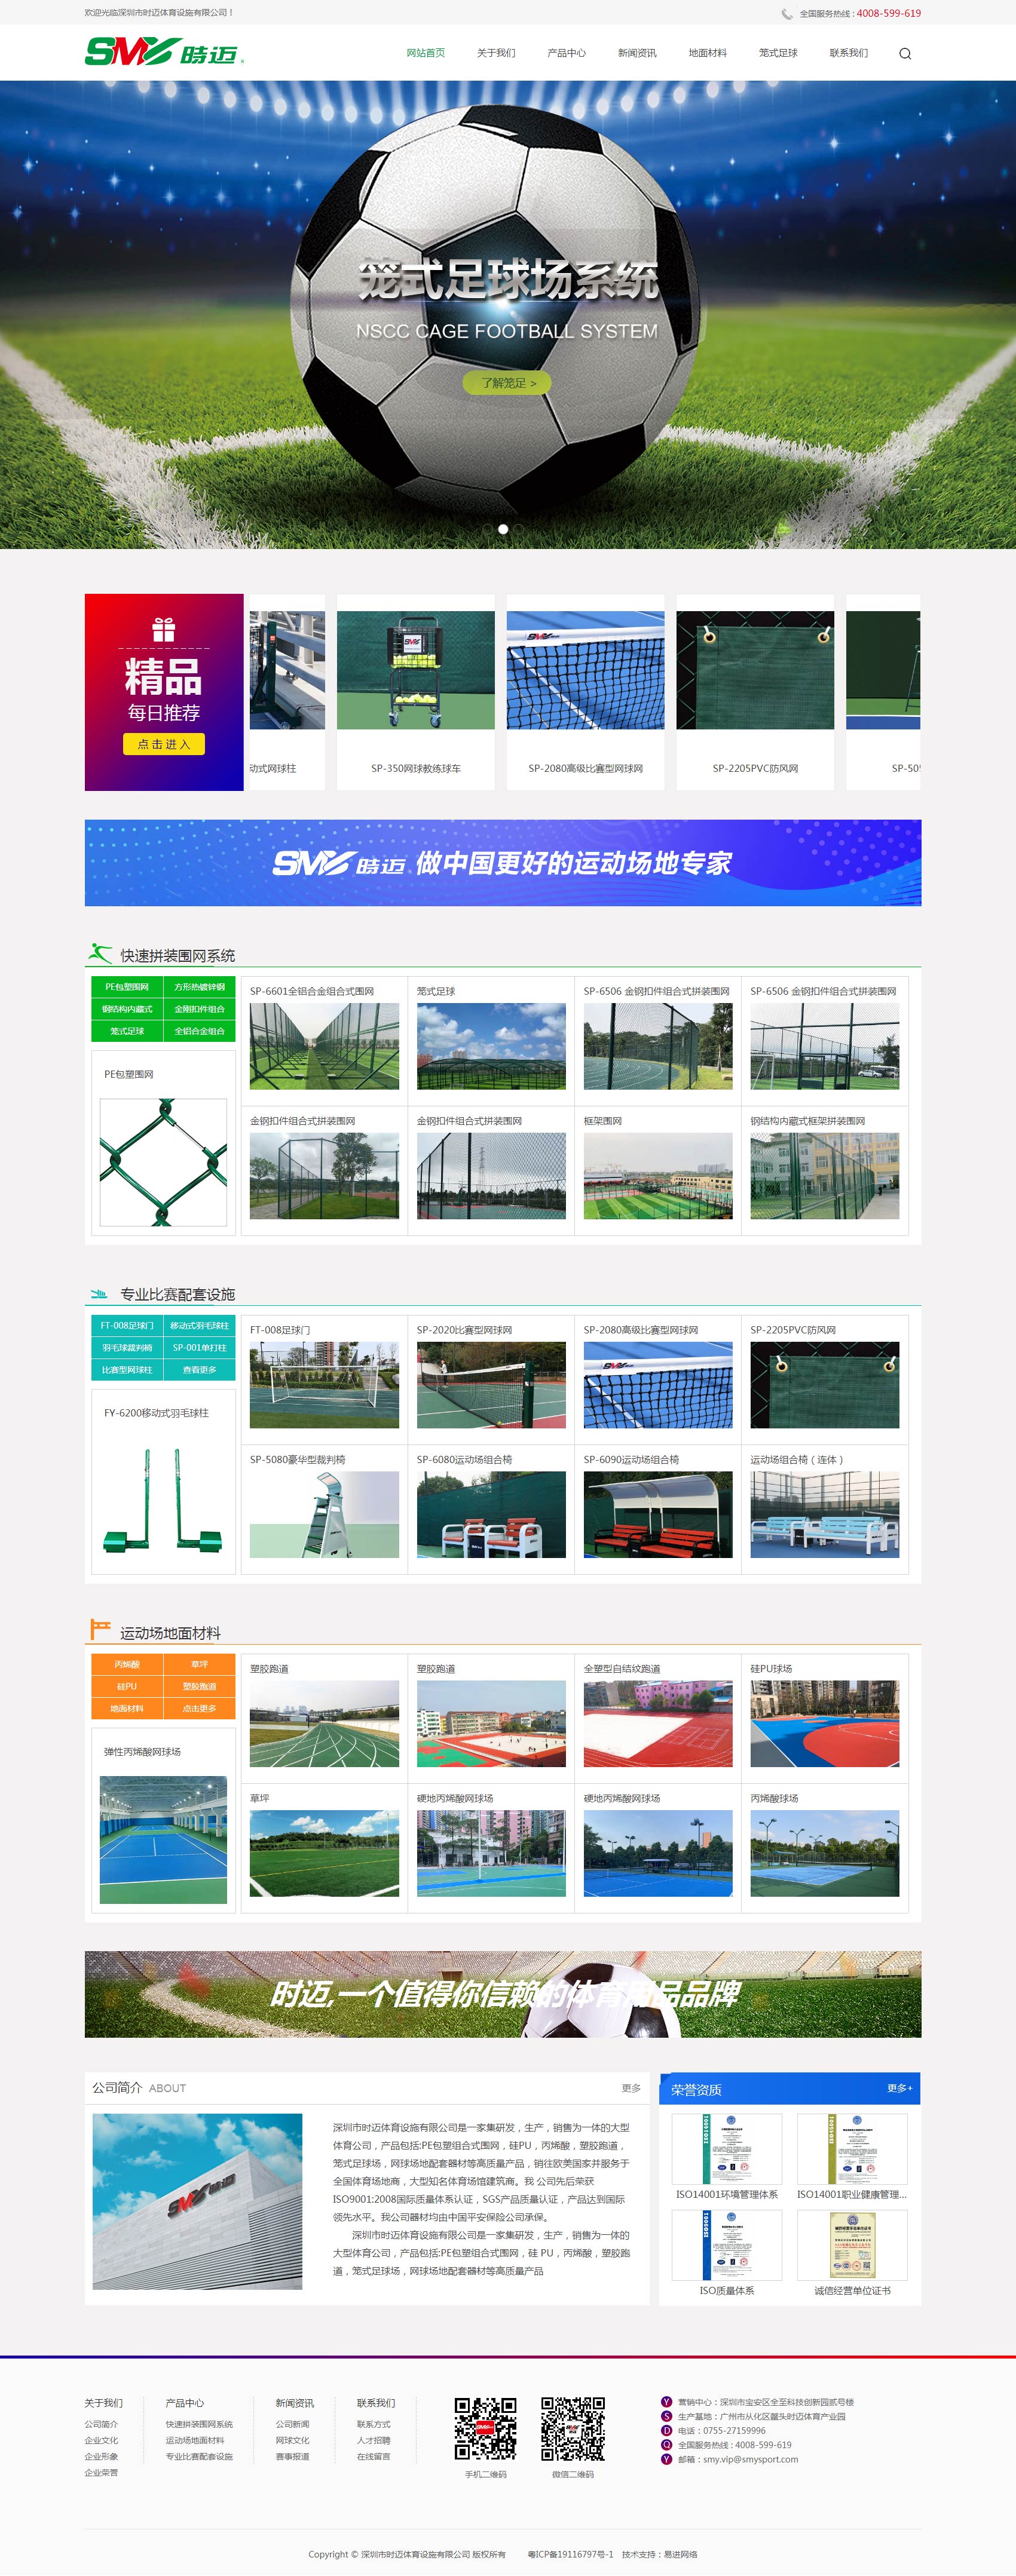 快速拼装围网,运动场地面材料,网球场地配套器材-深圳市时迈体育设施有限公司.jpg